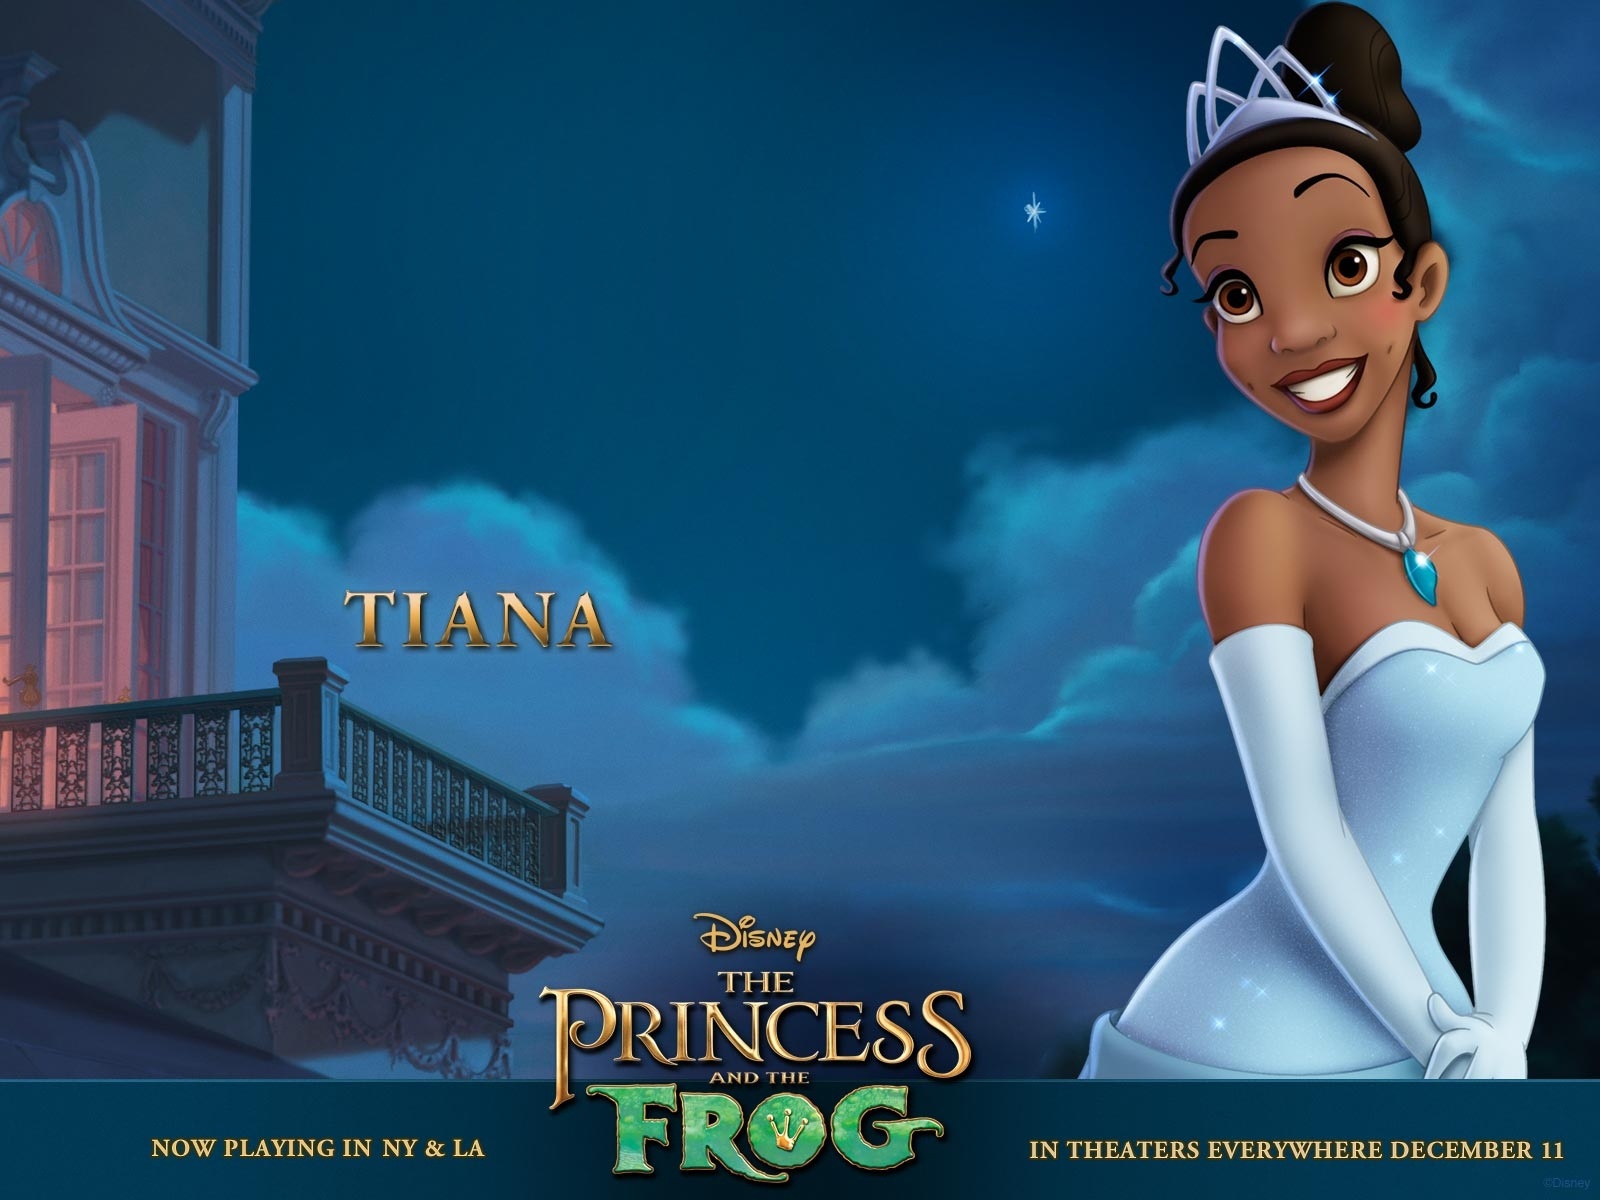 "The Princess and the Frog: Tiana" desktop wallpaper (1600 x 1200 pixels)